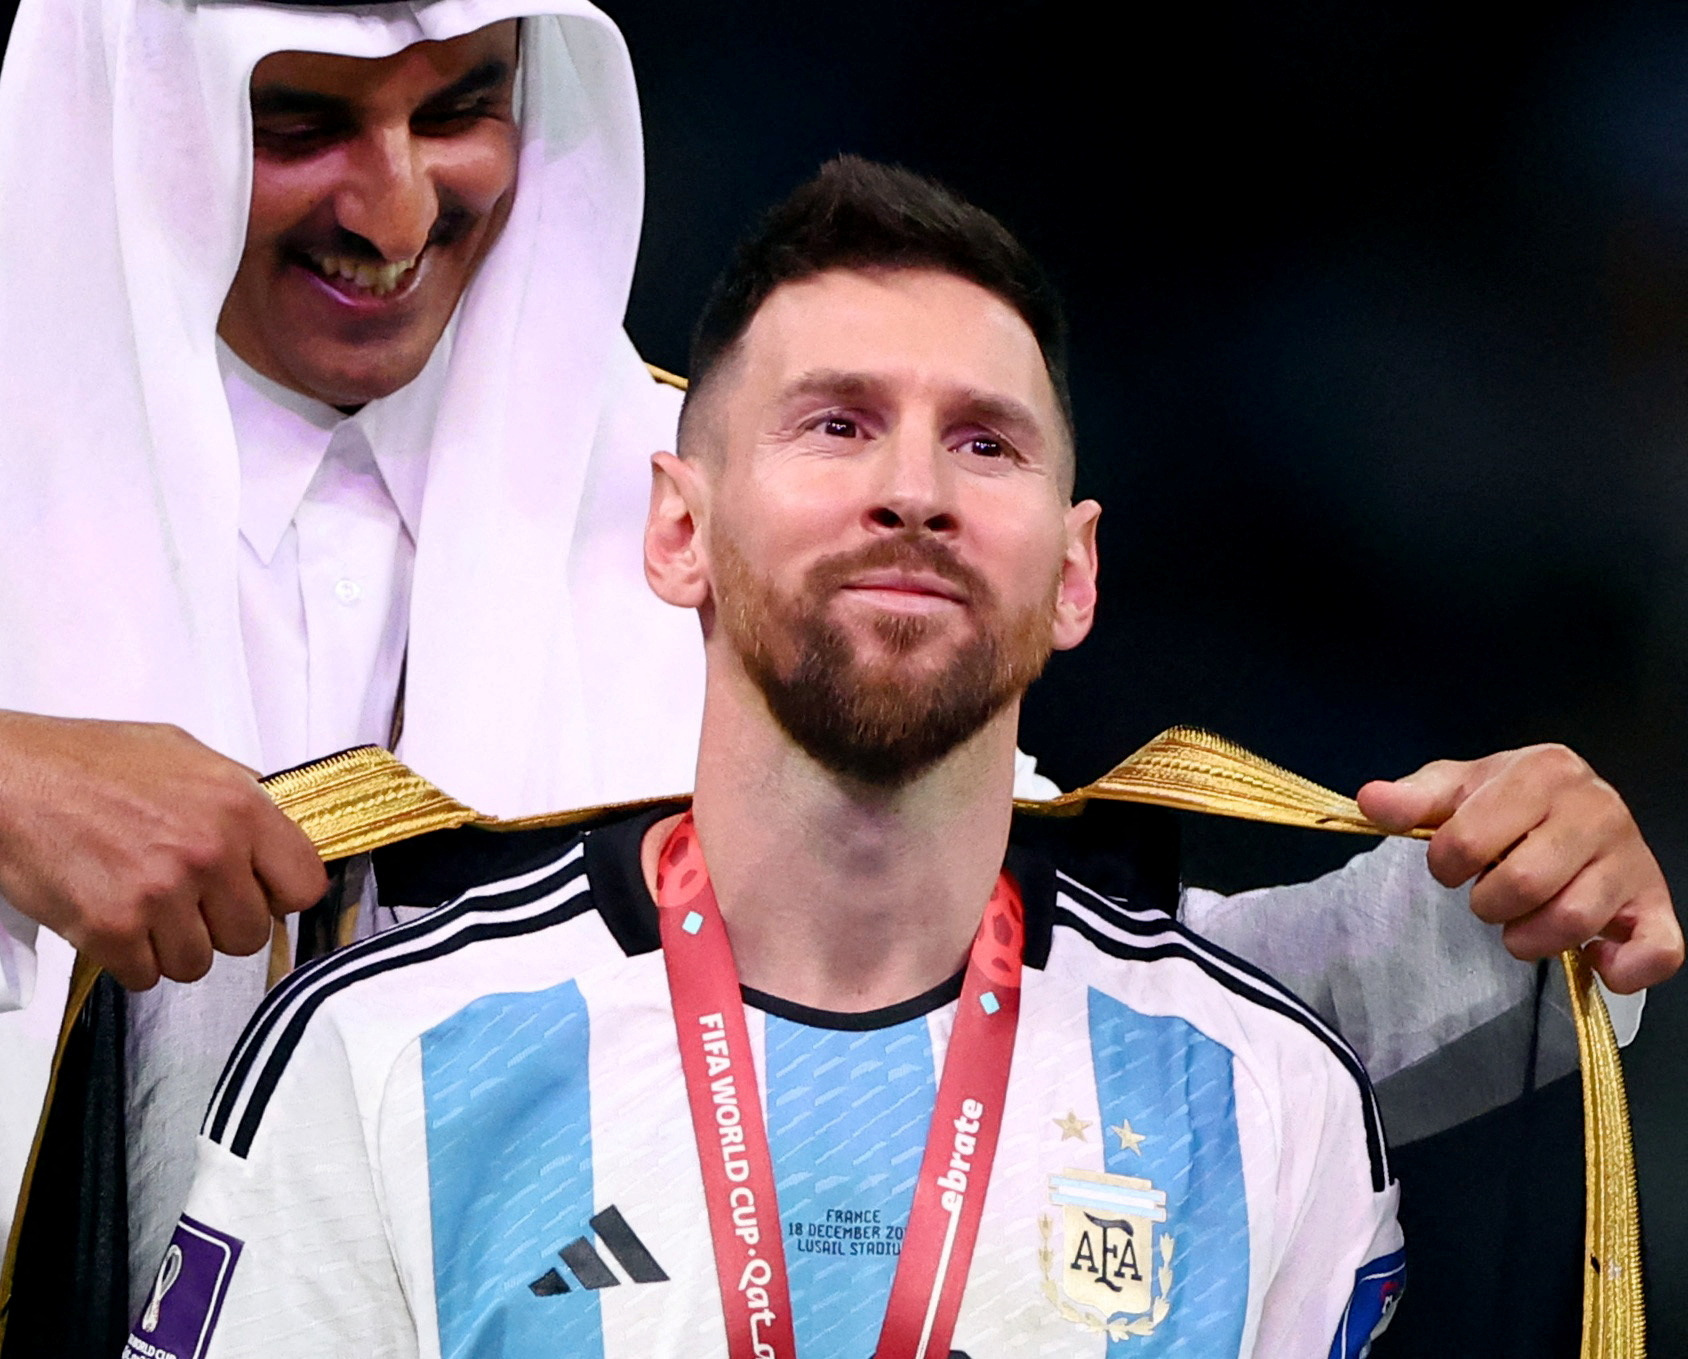 Ý nghĩa của chiếc áo choàng Messi mặc khi nhận cúp - Ảnh 1.